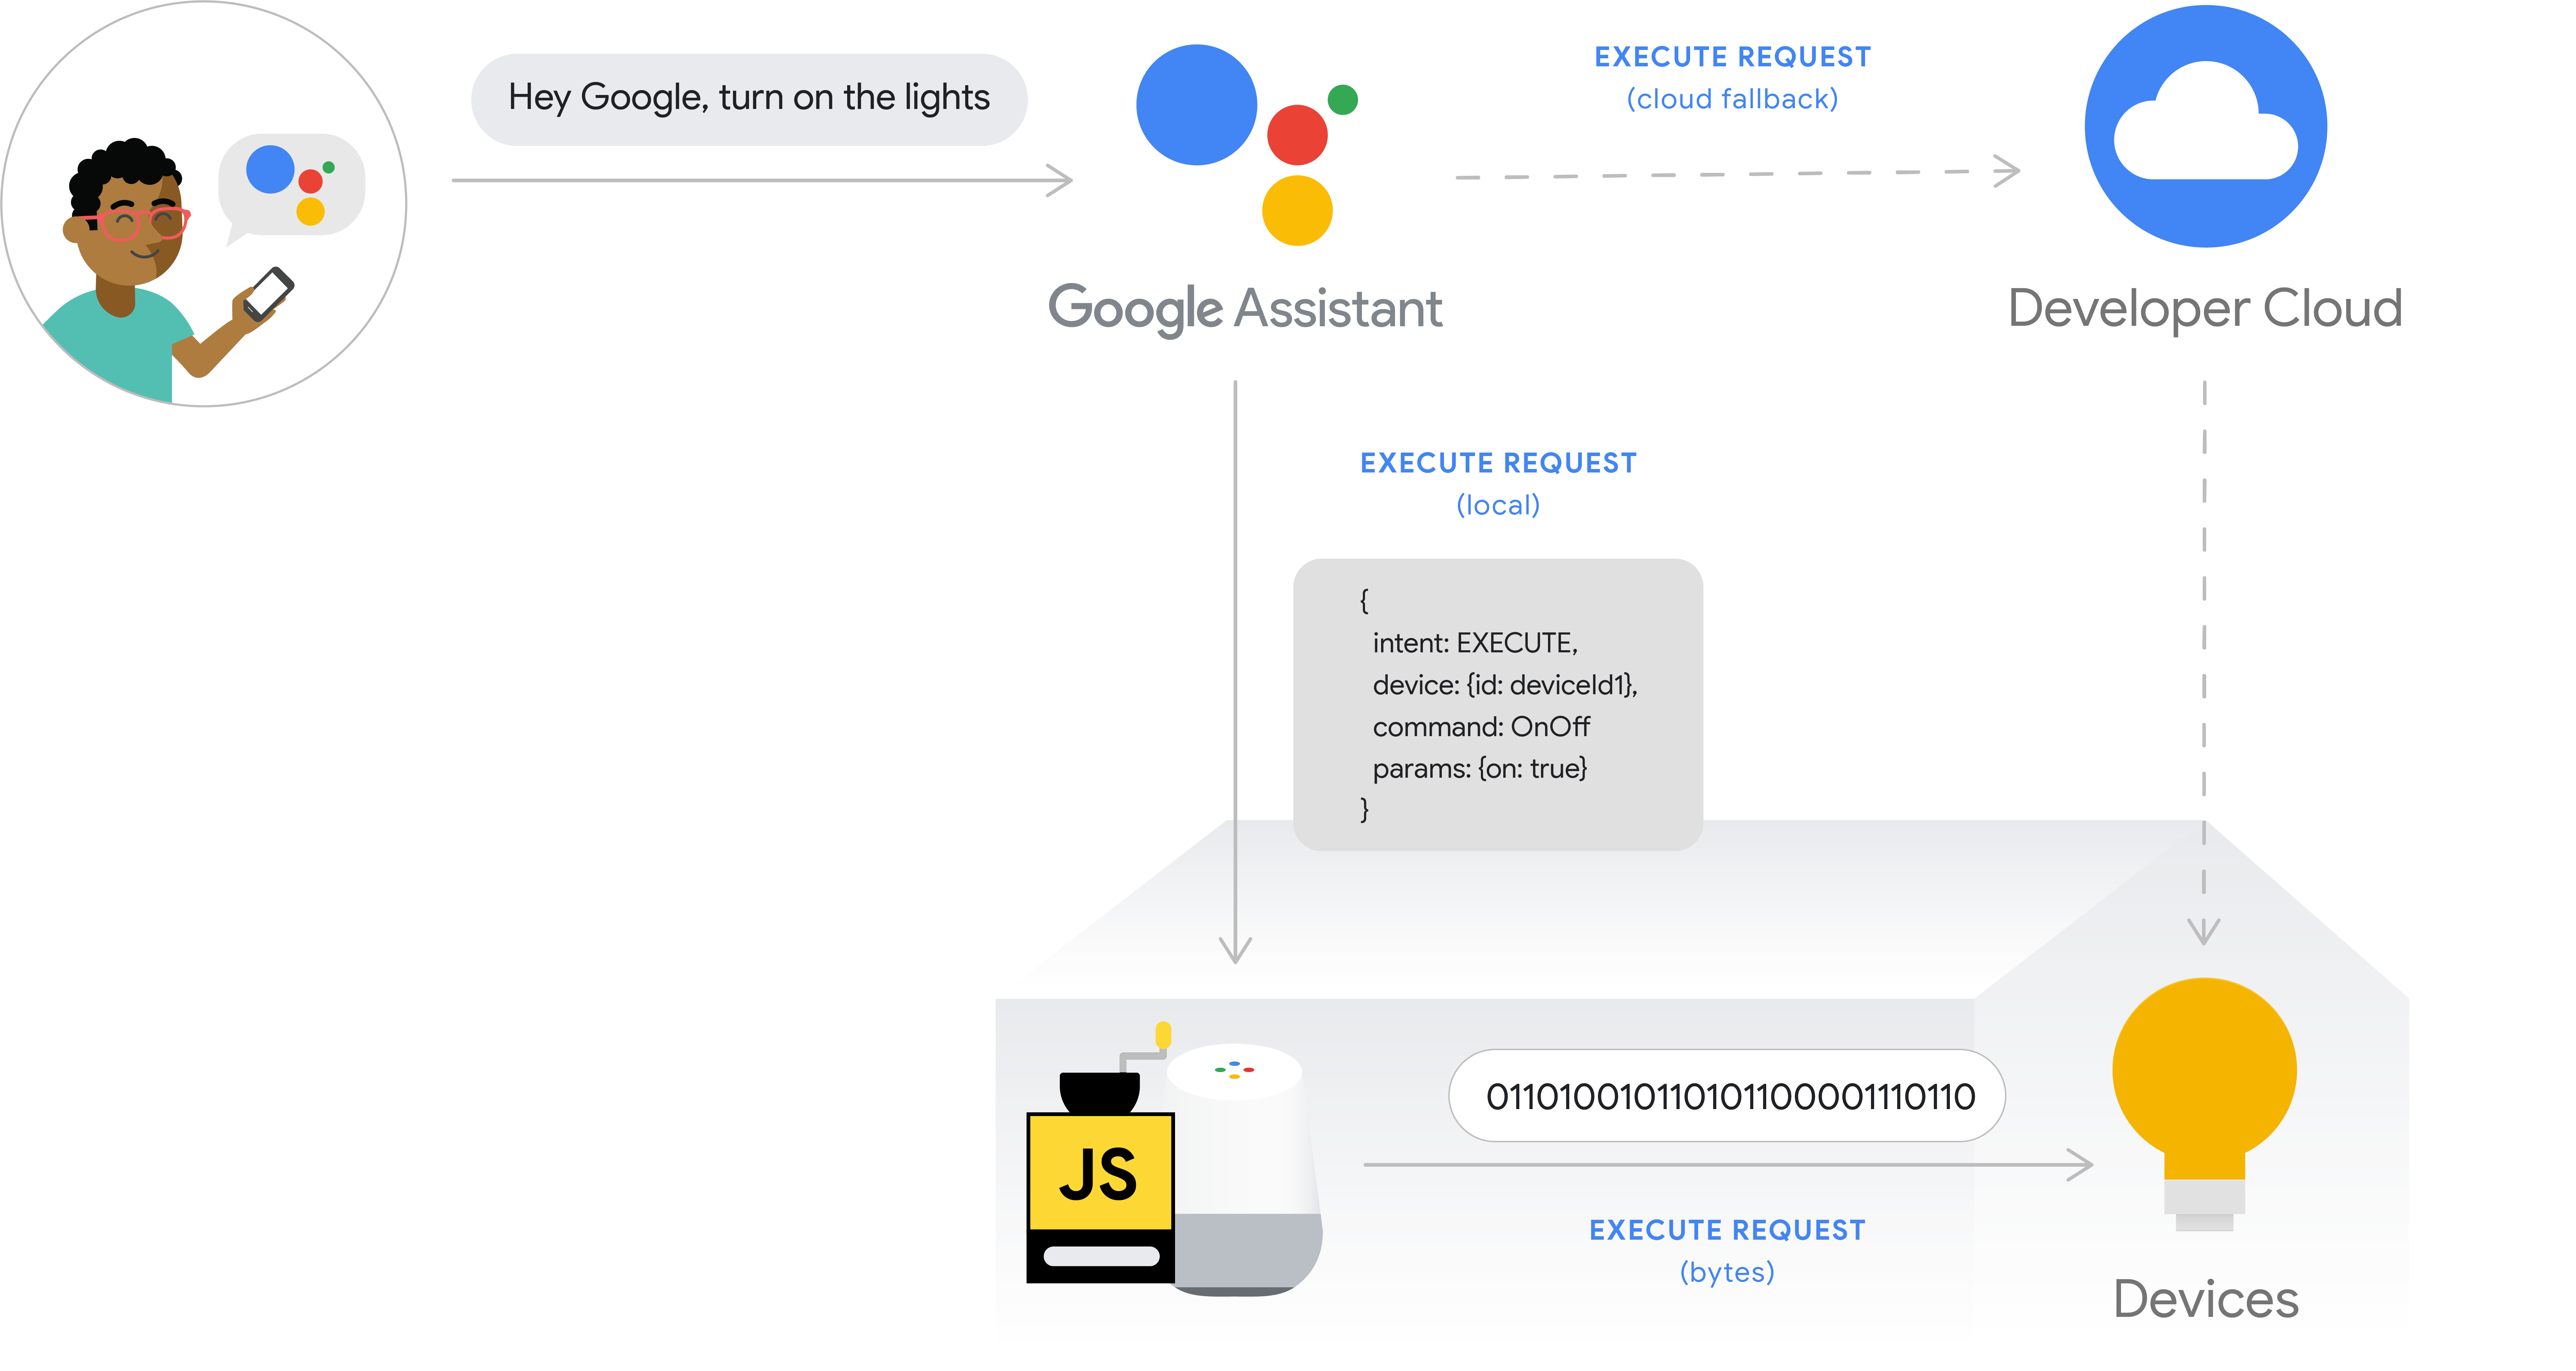 รูปนี้แสดงขั้นตอนการดําเนินการสําหรับการดําเนินการตามคําสั่งซื้อ เส้นทางการดําเนินการ
 จะบันทึกความตั้งใจของผู้ใช้จากโทรศัพท์ด้วย Google Assistant จากนั้น Google Cloud จะประมวลผลความตั้งใจของผู้ใช้ จากนั้นจะมีการประมวลผลภายในอุปกรณ์ Google Home
 และจะออกคําสั่งไปยังฮับอุปกรณ์โดยตรง
 หรือส่งไปยังอุปกรณ์โดยตรง ระบบคลาวด์ของนักพัฒนาซอฟต์แวร์พร้อมใช้งานเป็น
            ระบบคลาวด์สํารอง